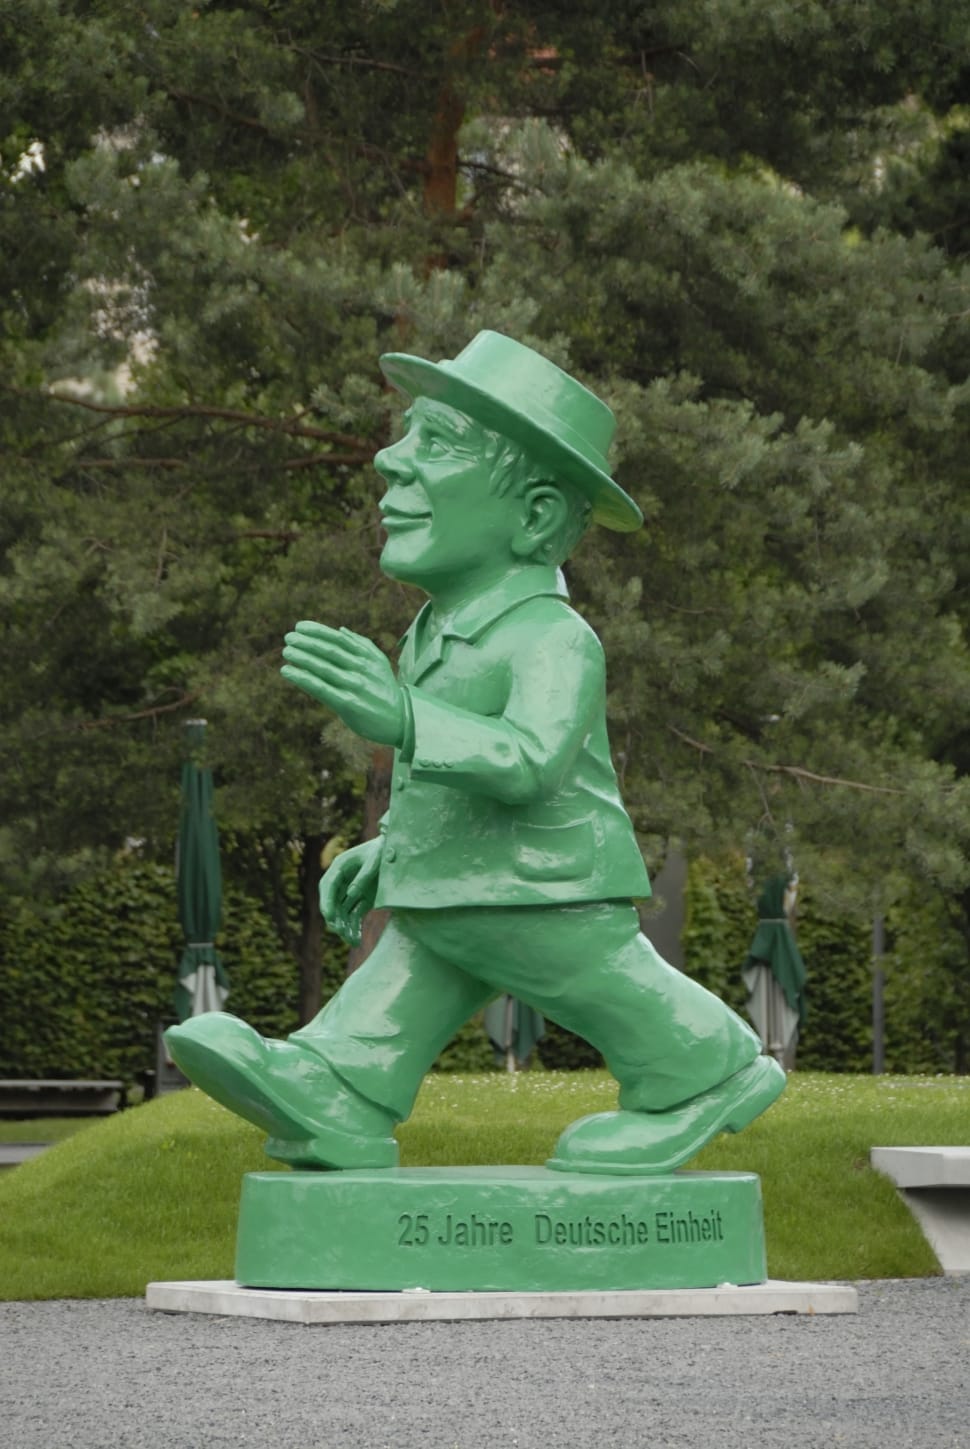 25 jahre deutsche einheit statue preview